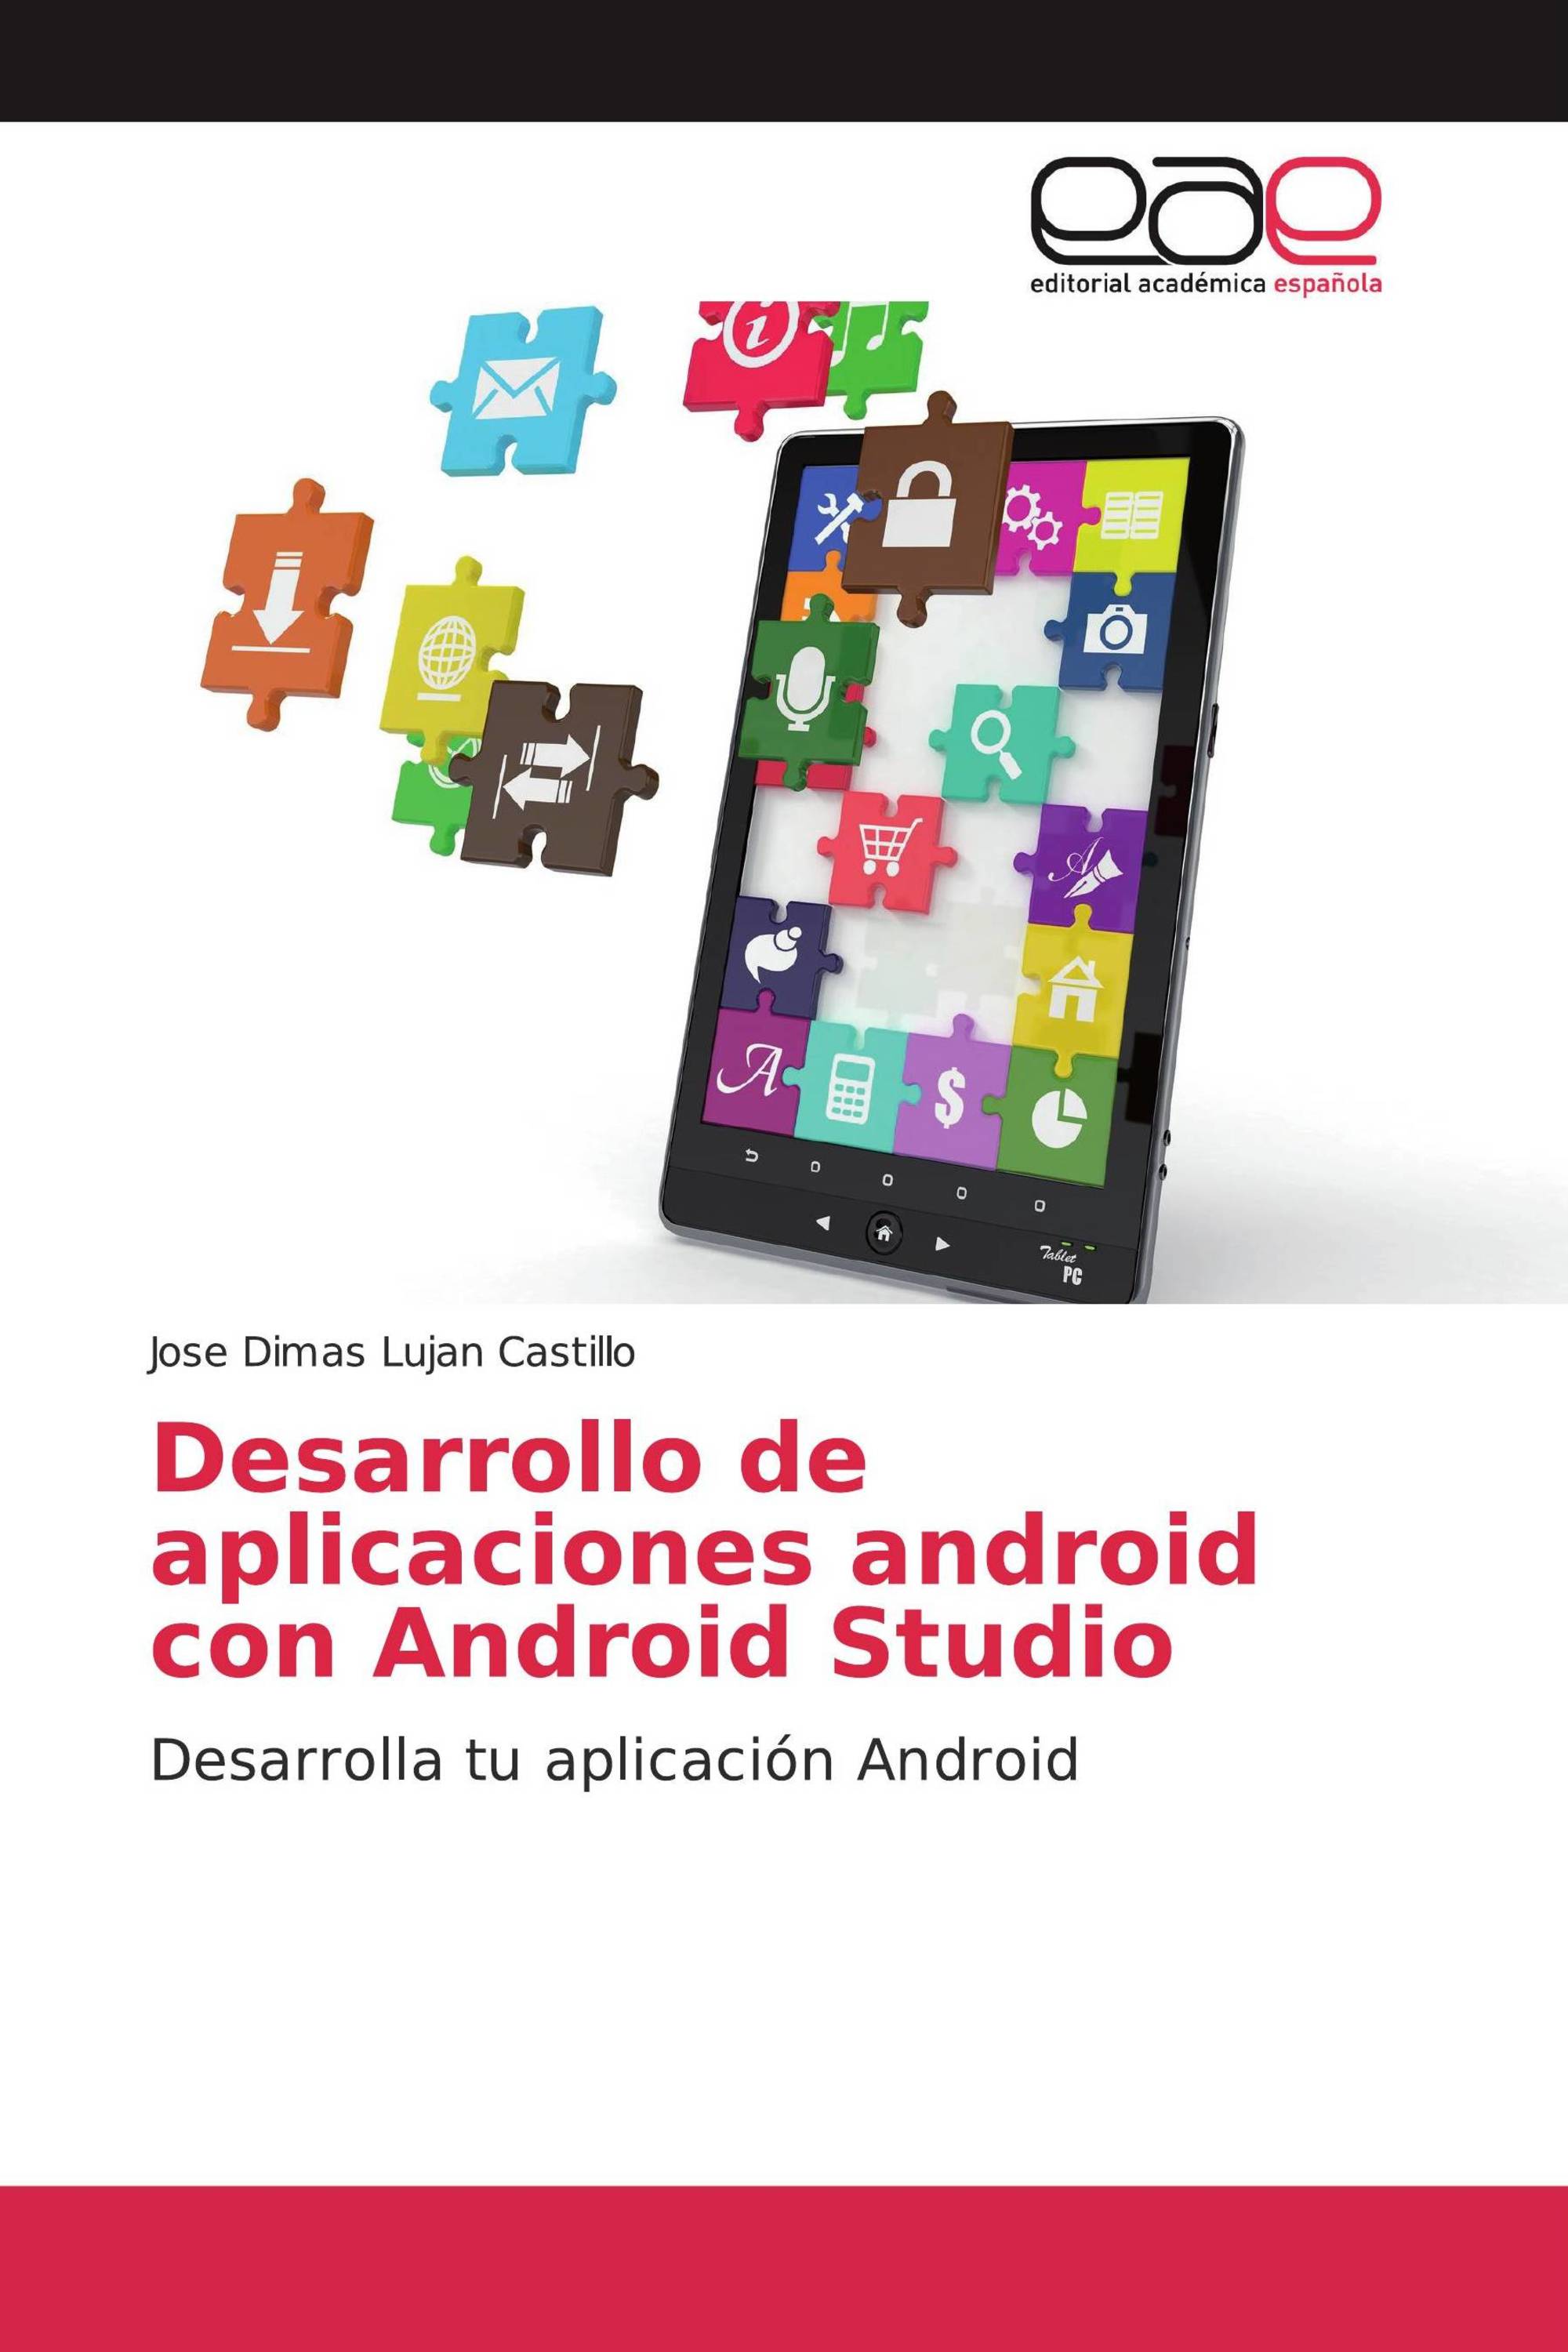 Introducción al desarrollo de aplicaciones con Android Studio (IV)